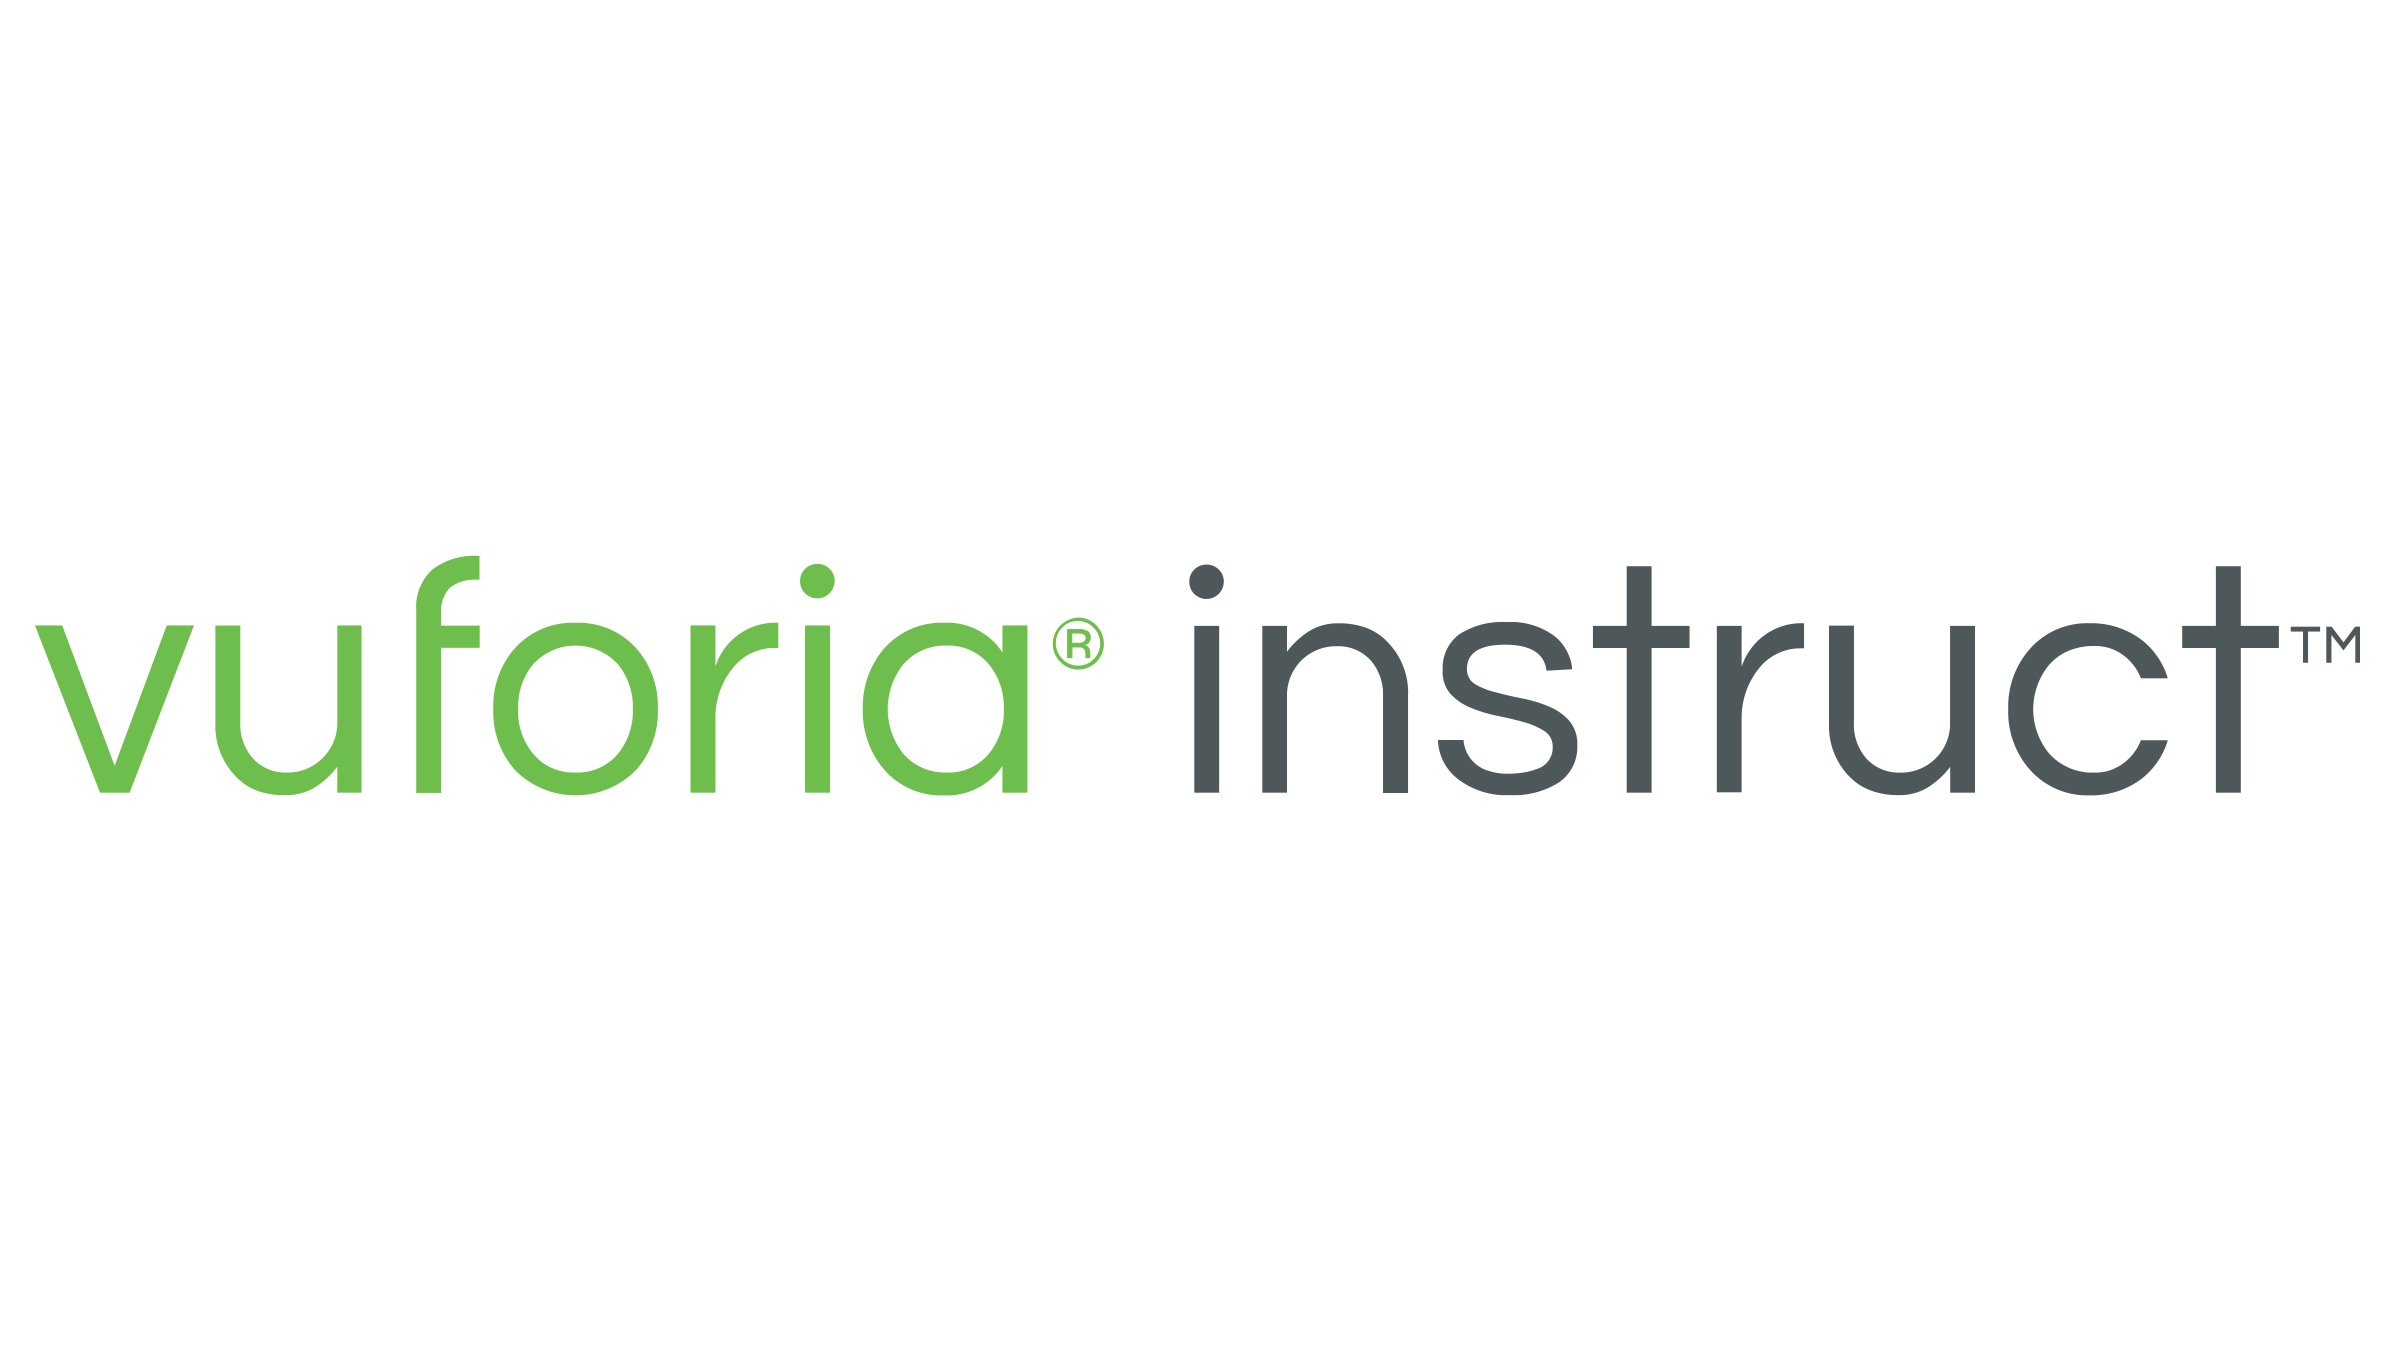 Logo verde e grigio di PTC Vuforia Instruct